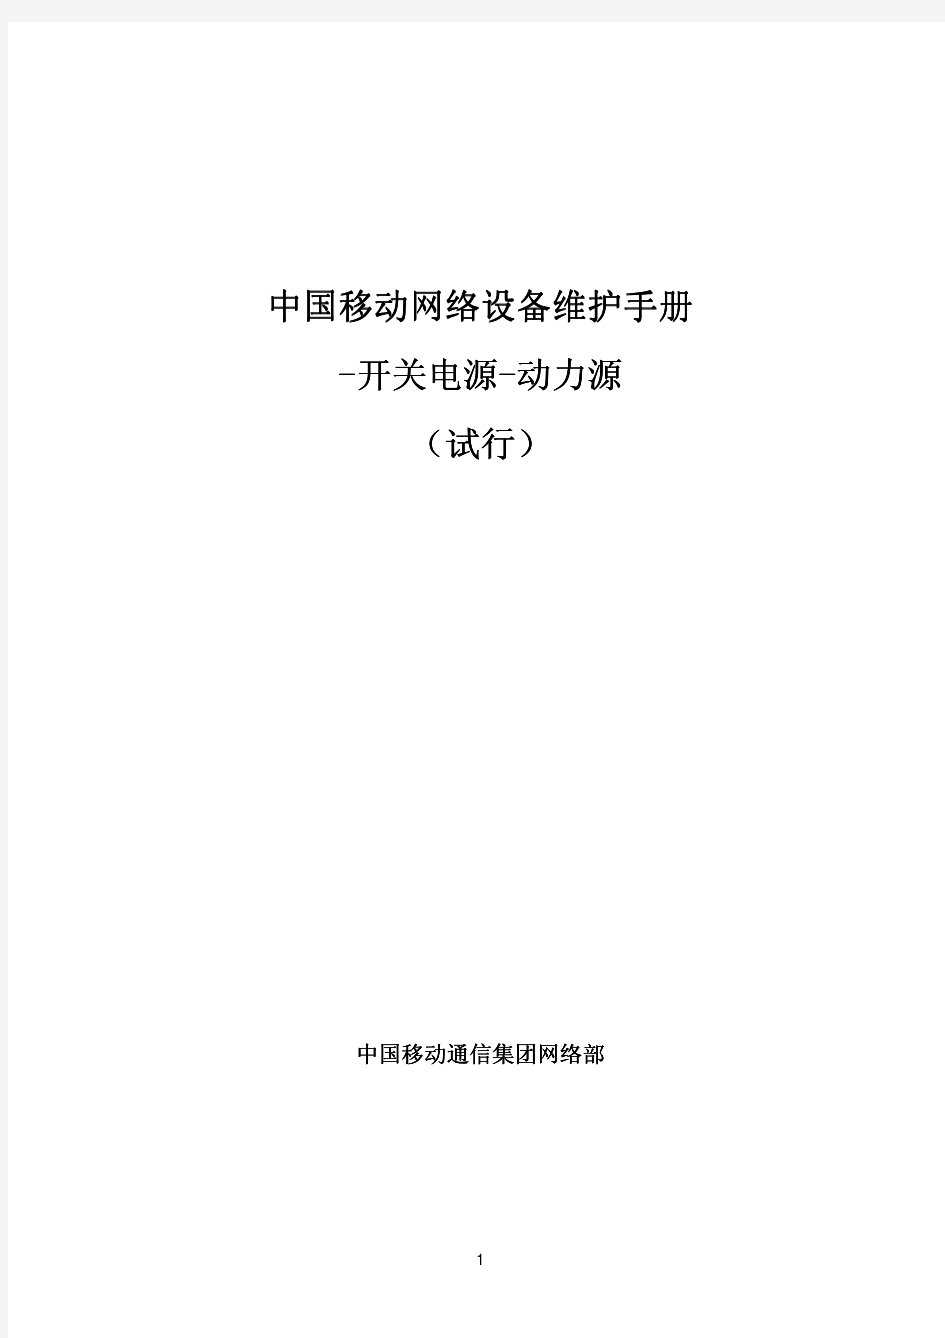 11中国移动网络设备维护手册-开关电源-动力源(试行)介绍